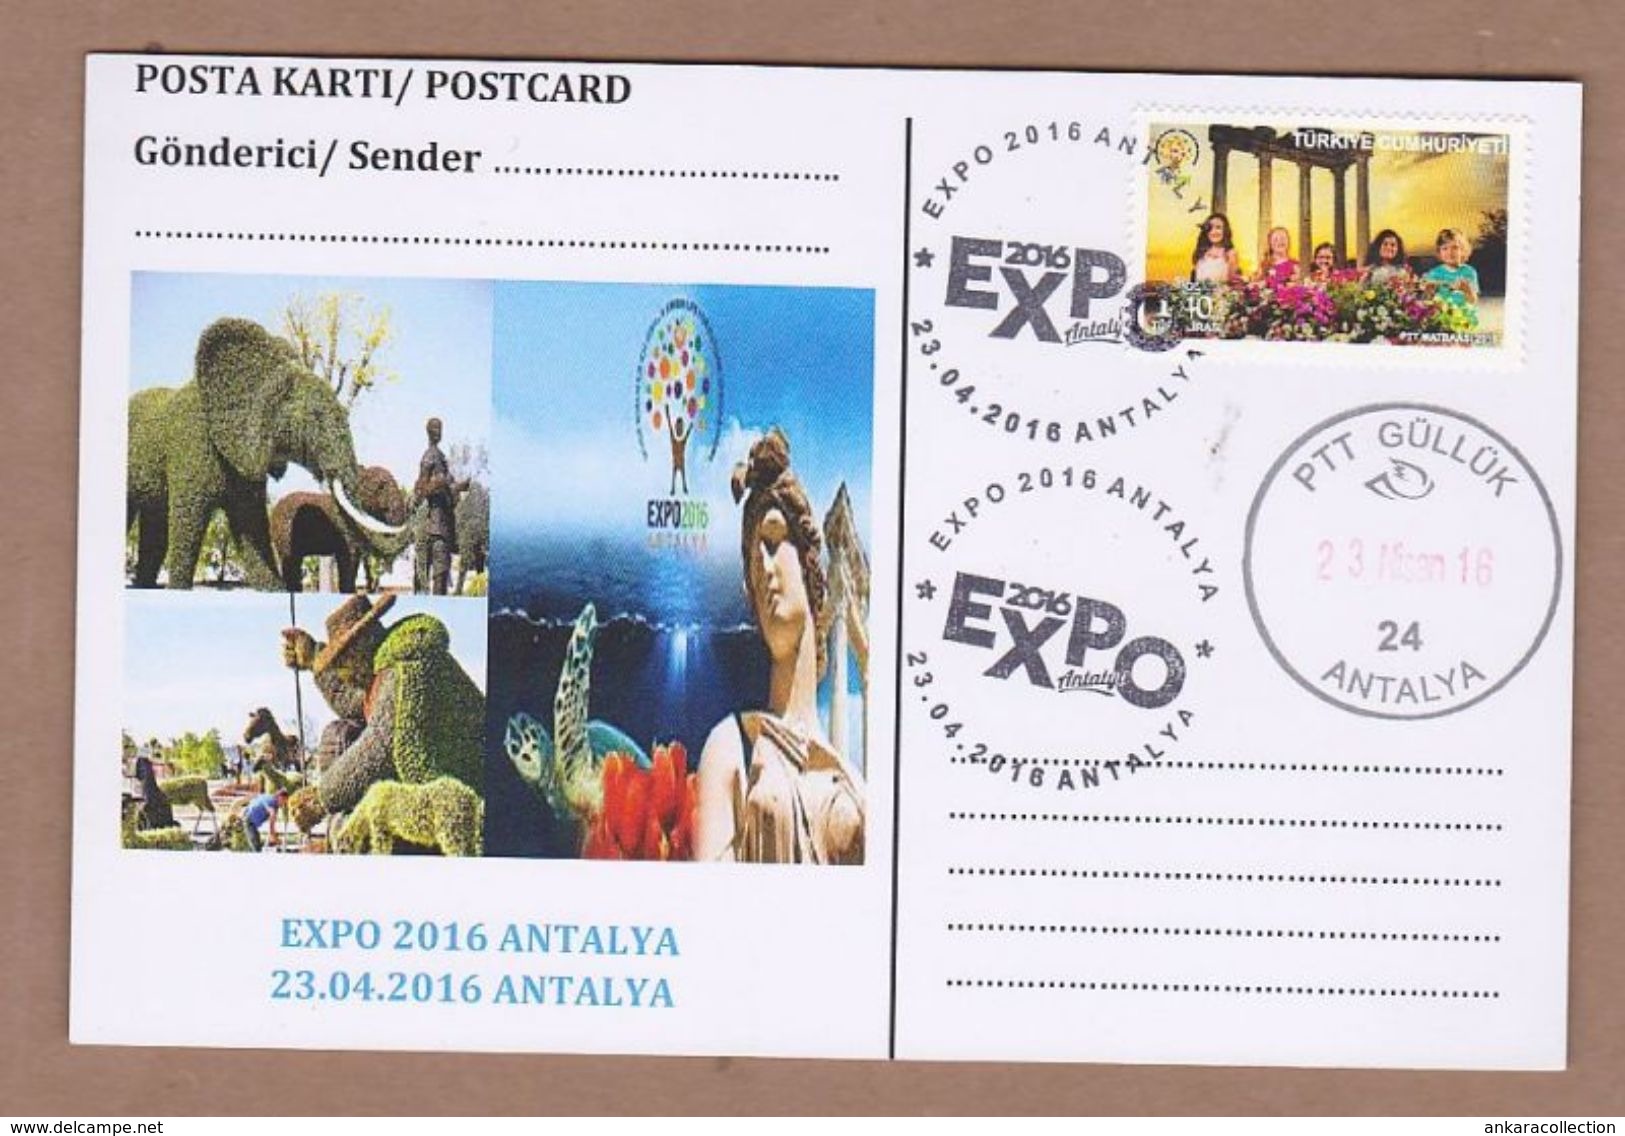 AC - TURKEY POSTAL STATIONERY - EXPO 2016 ANTALYA ANTALYA, 23 APRIL 2016 - Postal Stationery